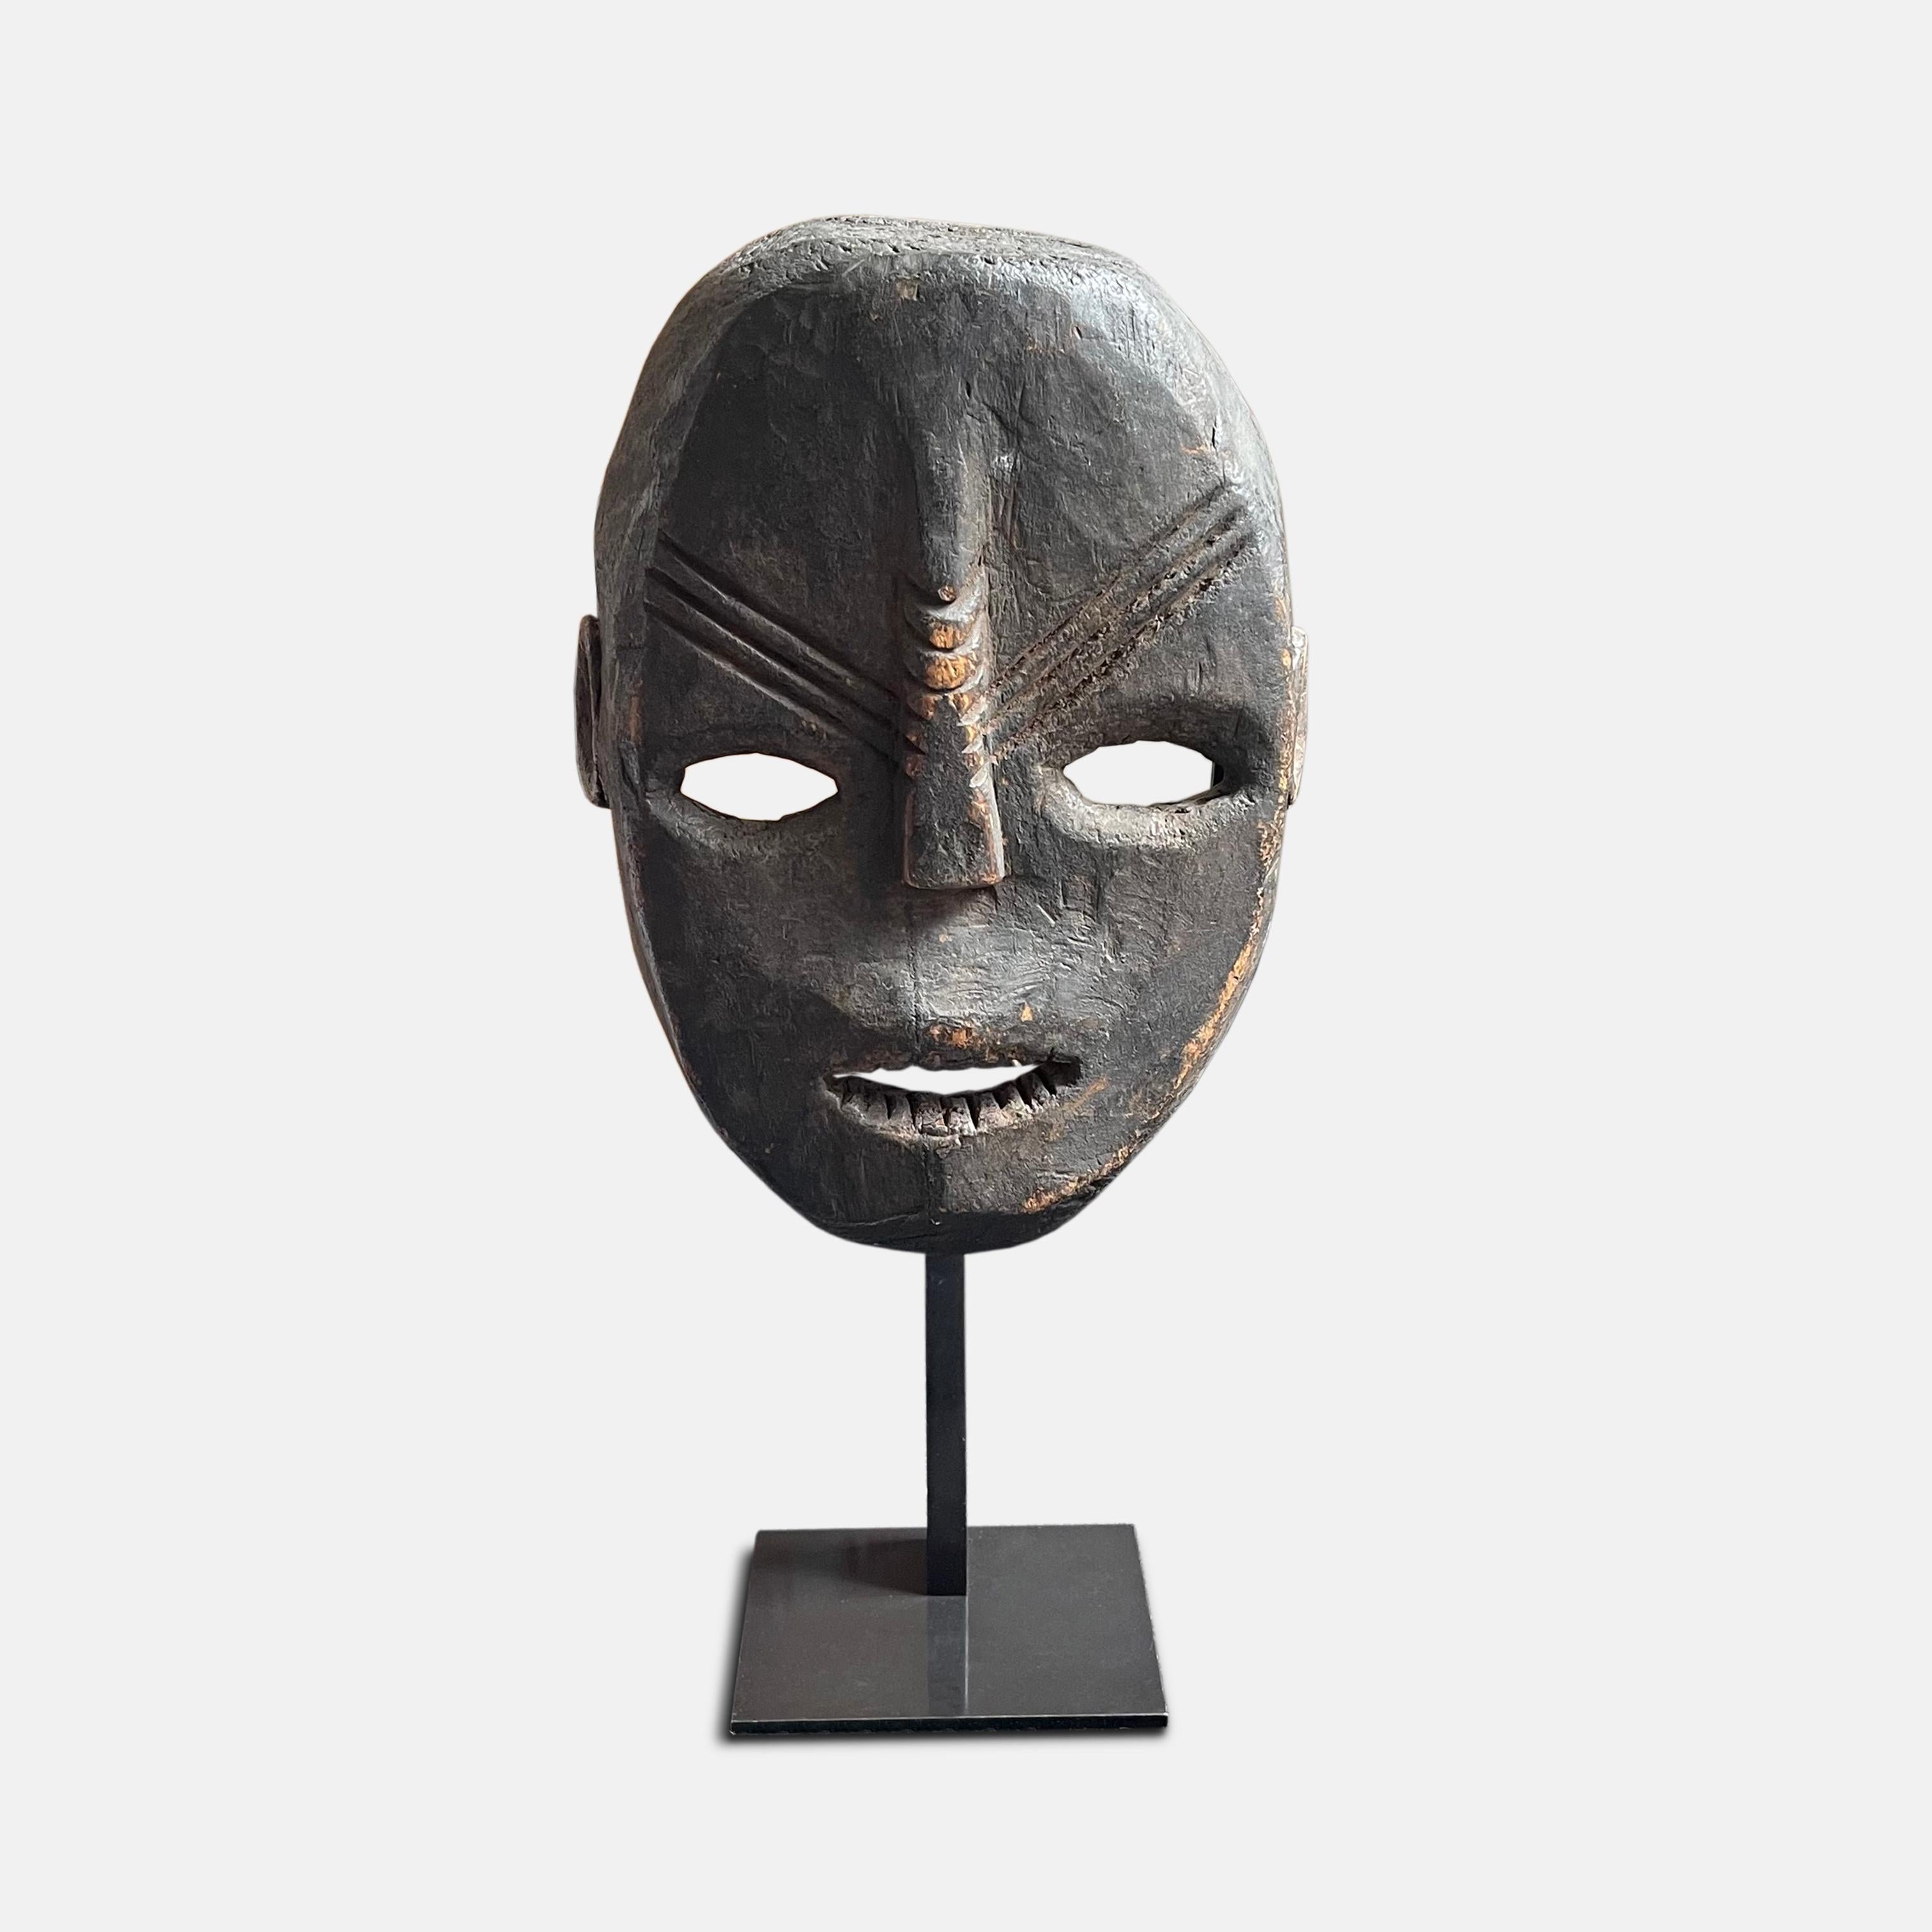 Con una hermosa pátina oscura, esta máscara de madera de principios del siglo XX muestra un rostro humano naturalista, aplanado, con la frente, la boca abierta y los dientes estilizados en ligero relieve; la nariz estriada y alargada y las crestas